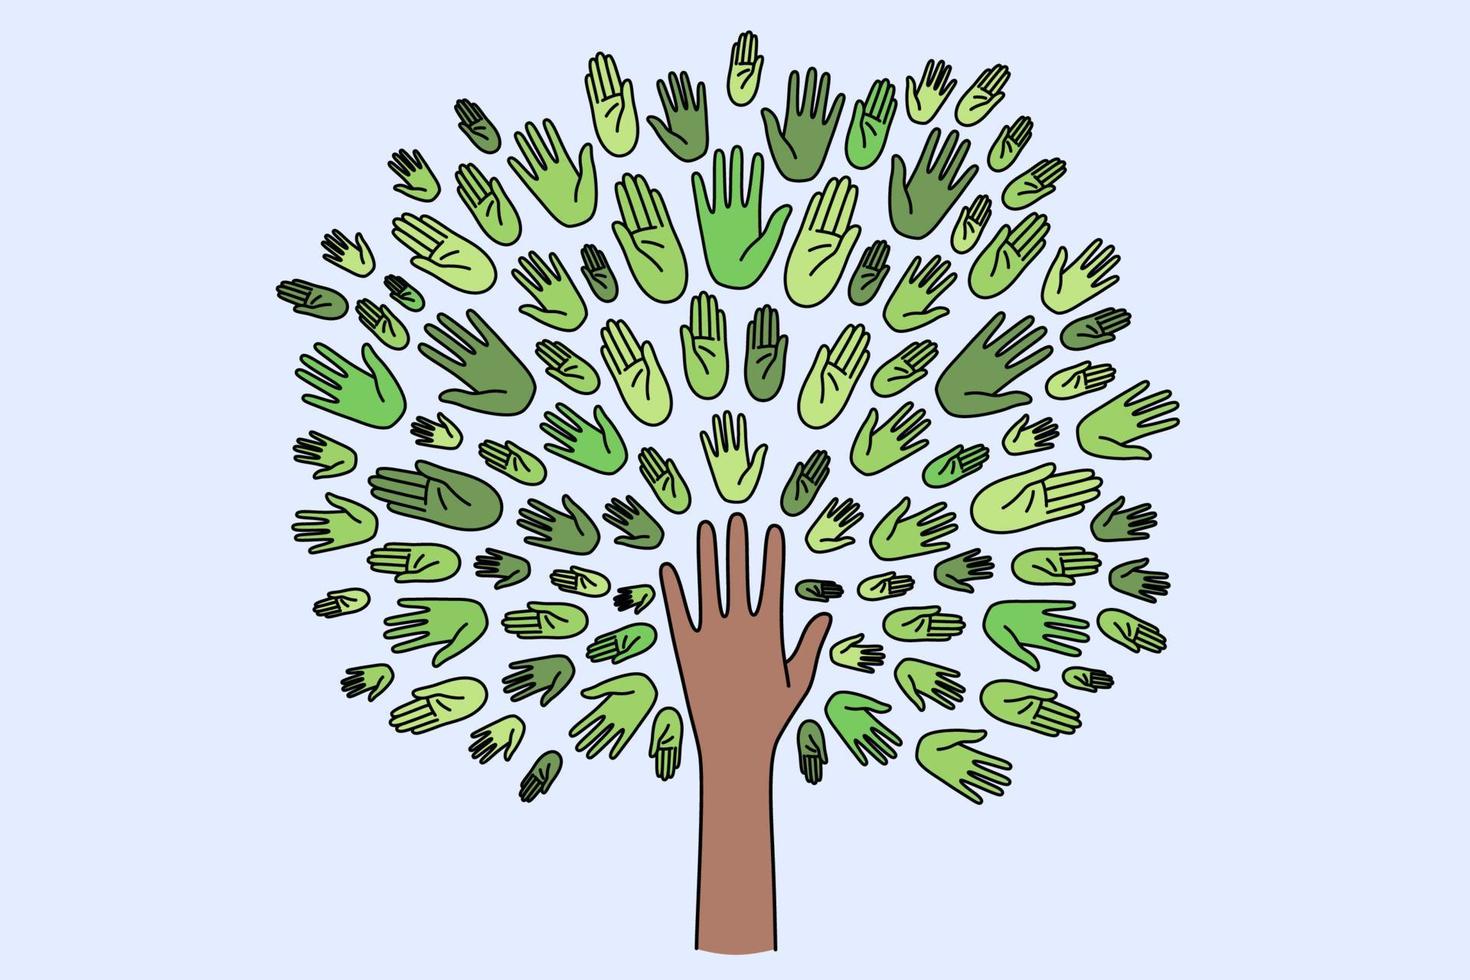 conceito de unidade, união e ecologia. mão humana formando árvore com coroa verde composta por várias mãos ilustração vetorial vetor